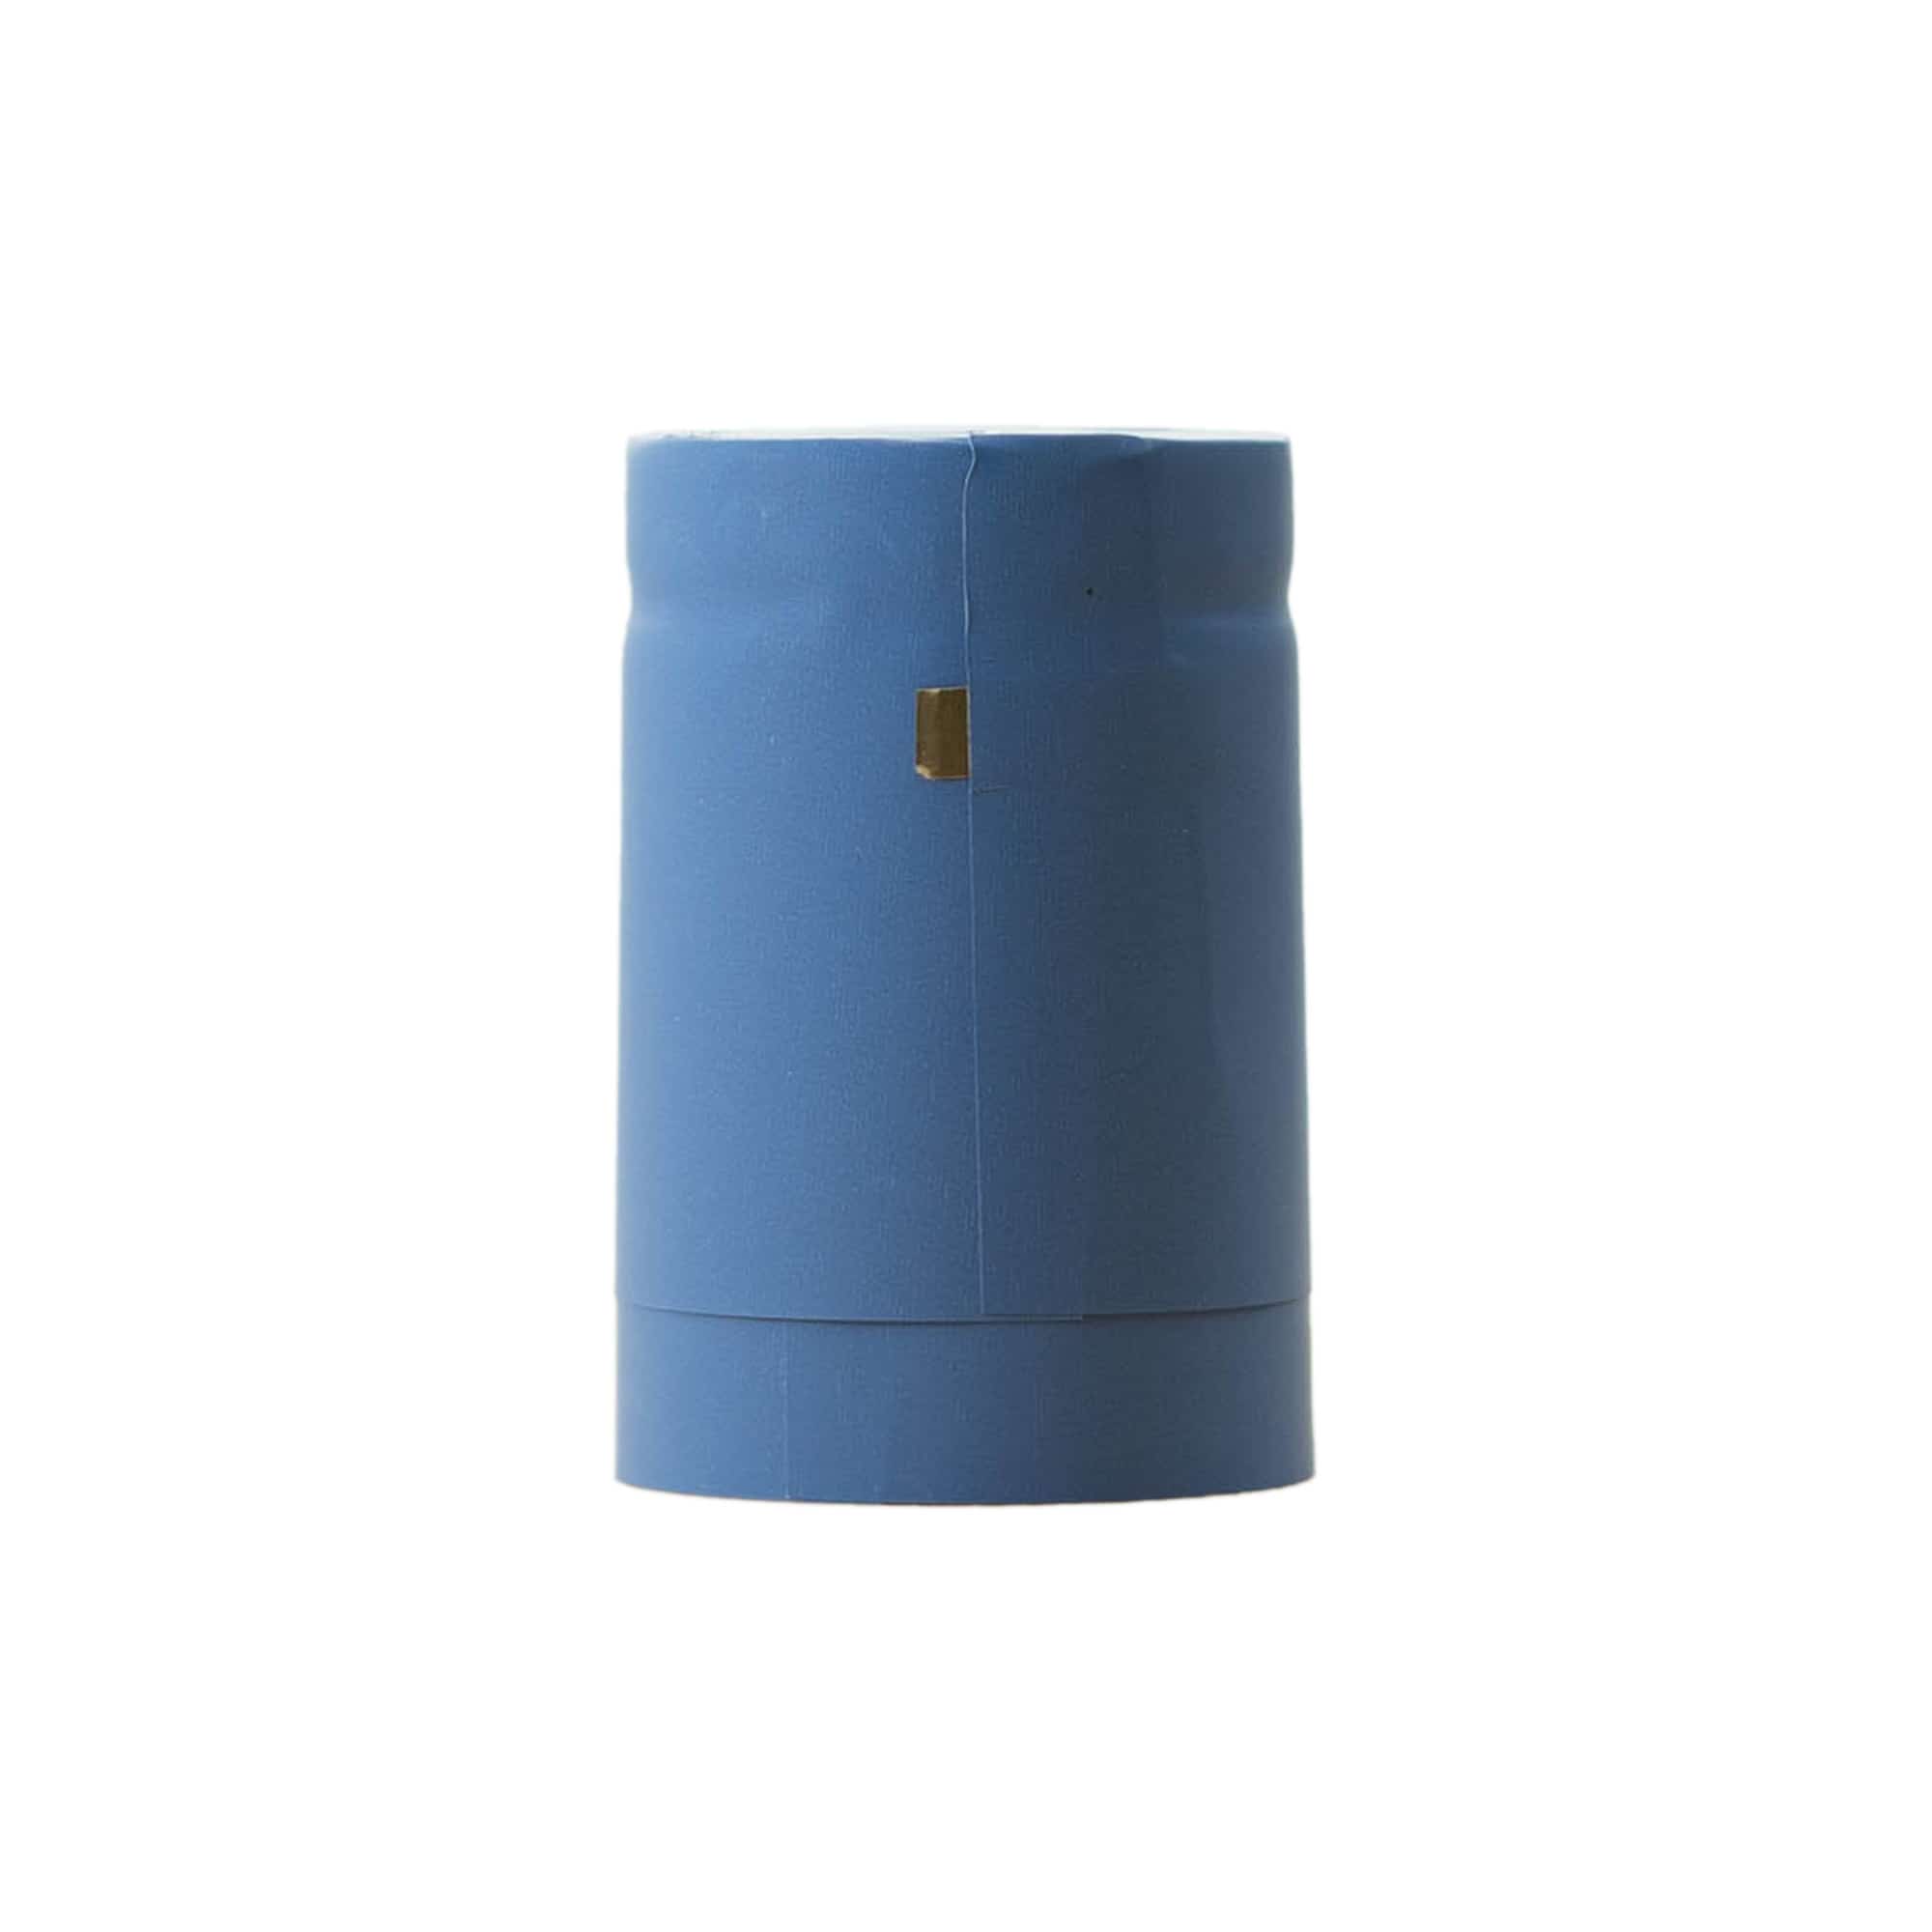 Kapturek termokurczliwy 32x41, tworzywo sztuczne PVC, kolor błękitny